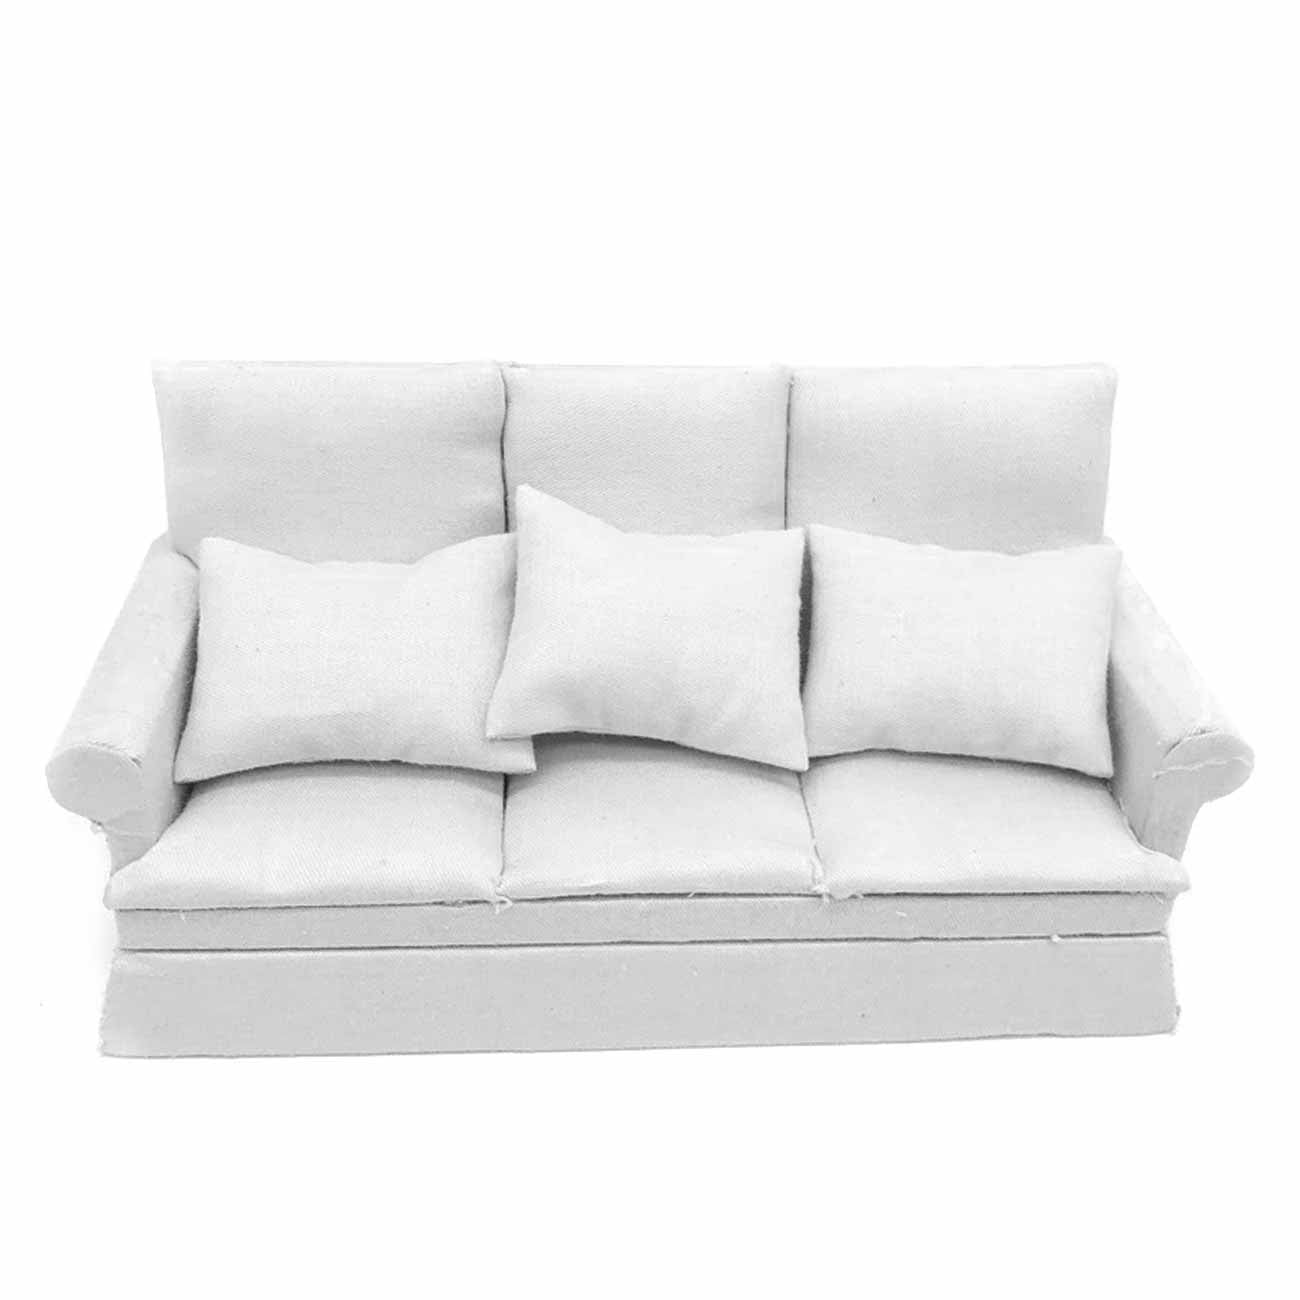 Dollhouse accessories 1:12 scale pillows Green & white plaid pillows